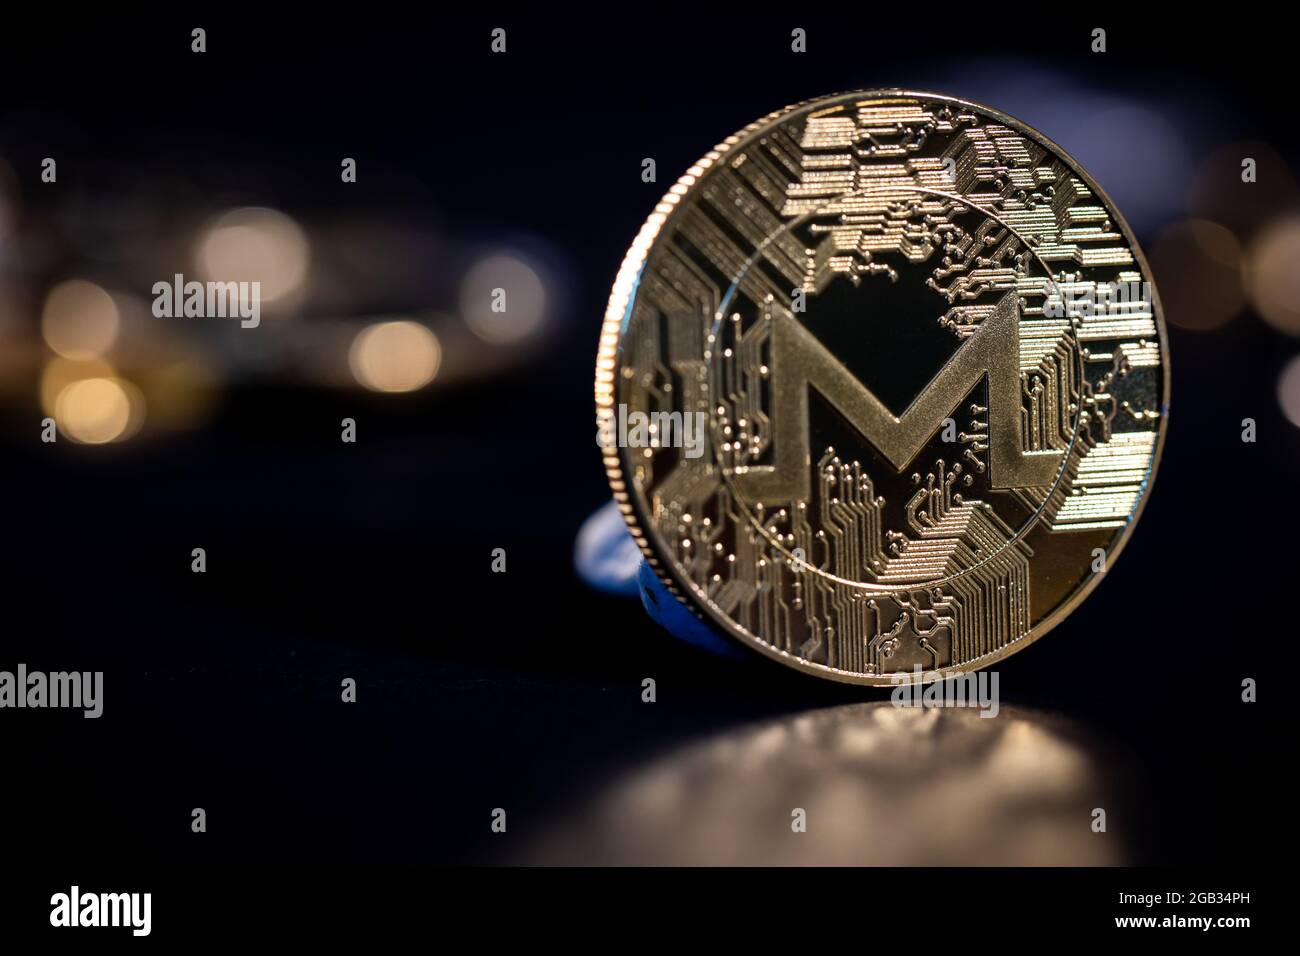 Monero cryptocurrency coin Stock Photo